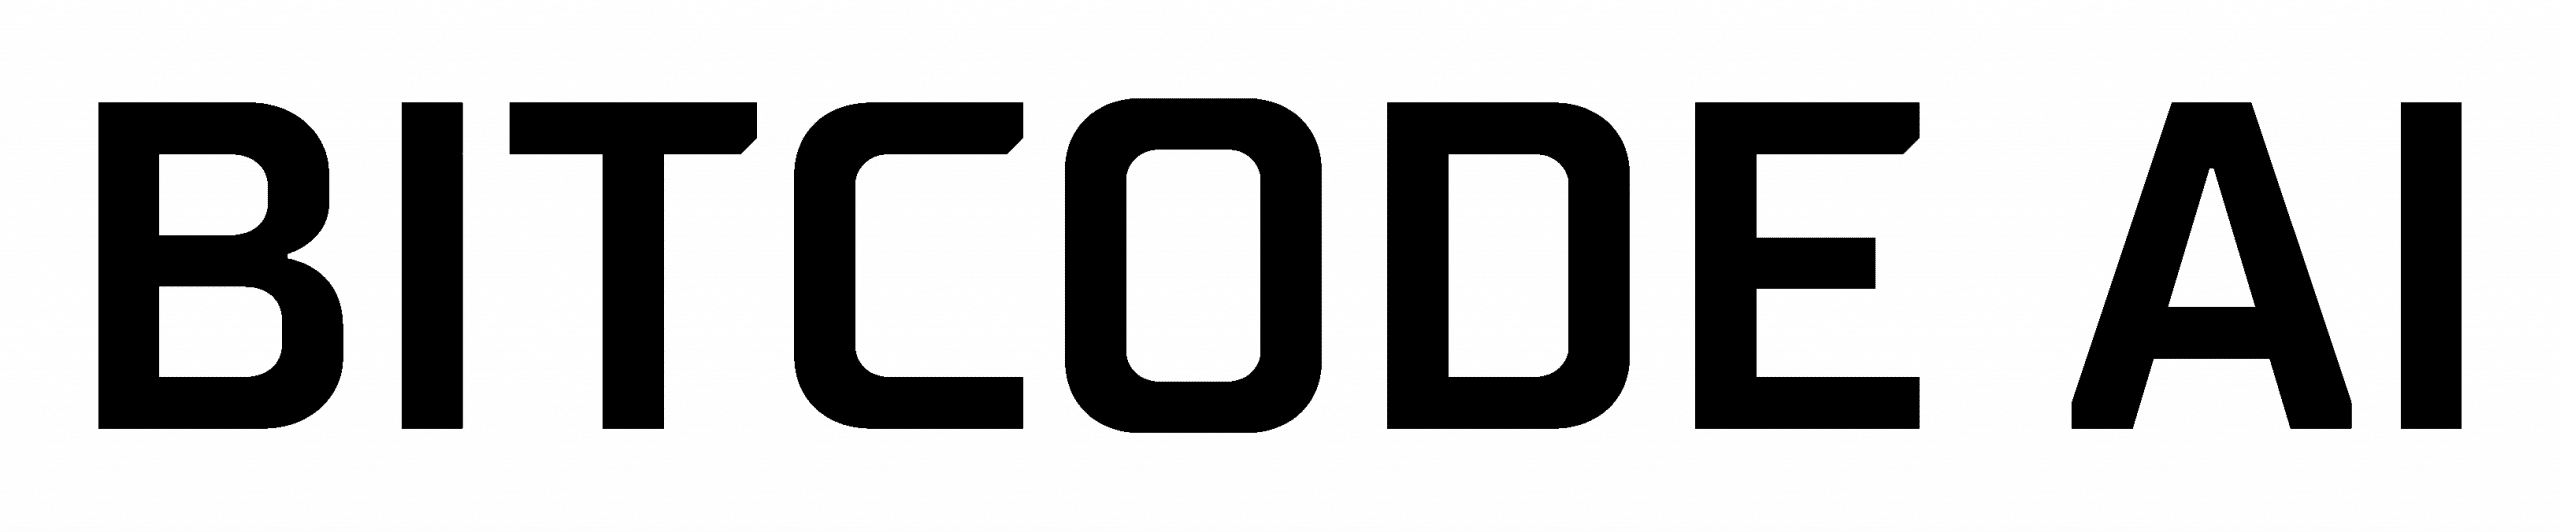 Bitcode AI Logo